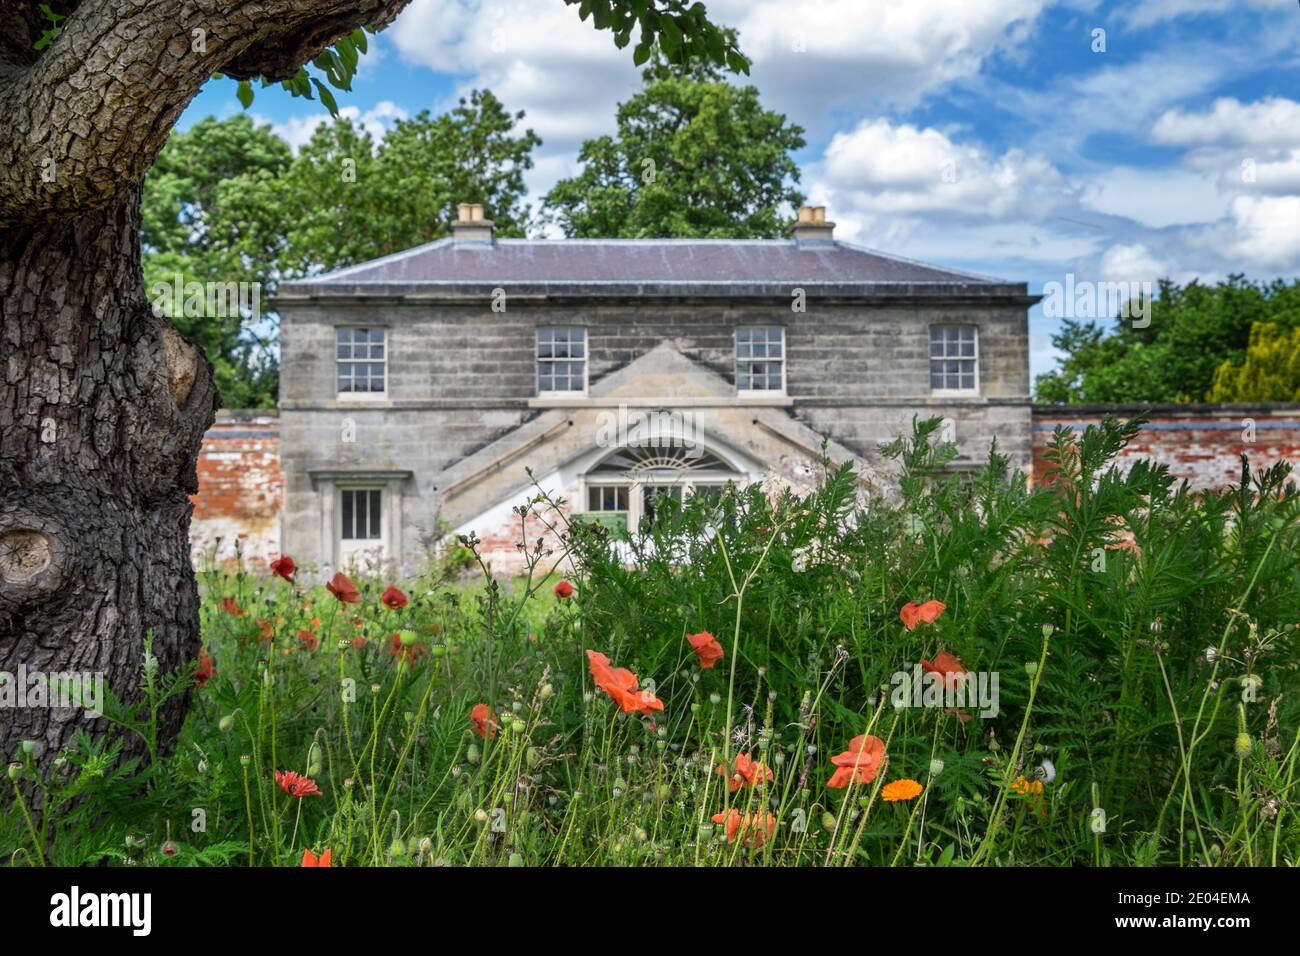 Il giardino recintato e la casa del giardiniere capo, situato nei terreni della Shugborough Estate, vicino a Stafford, Staffordshire, Inghilterra, Regno Unito Foto Stock